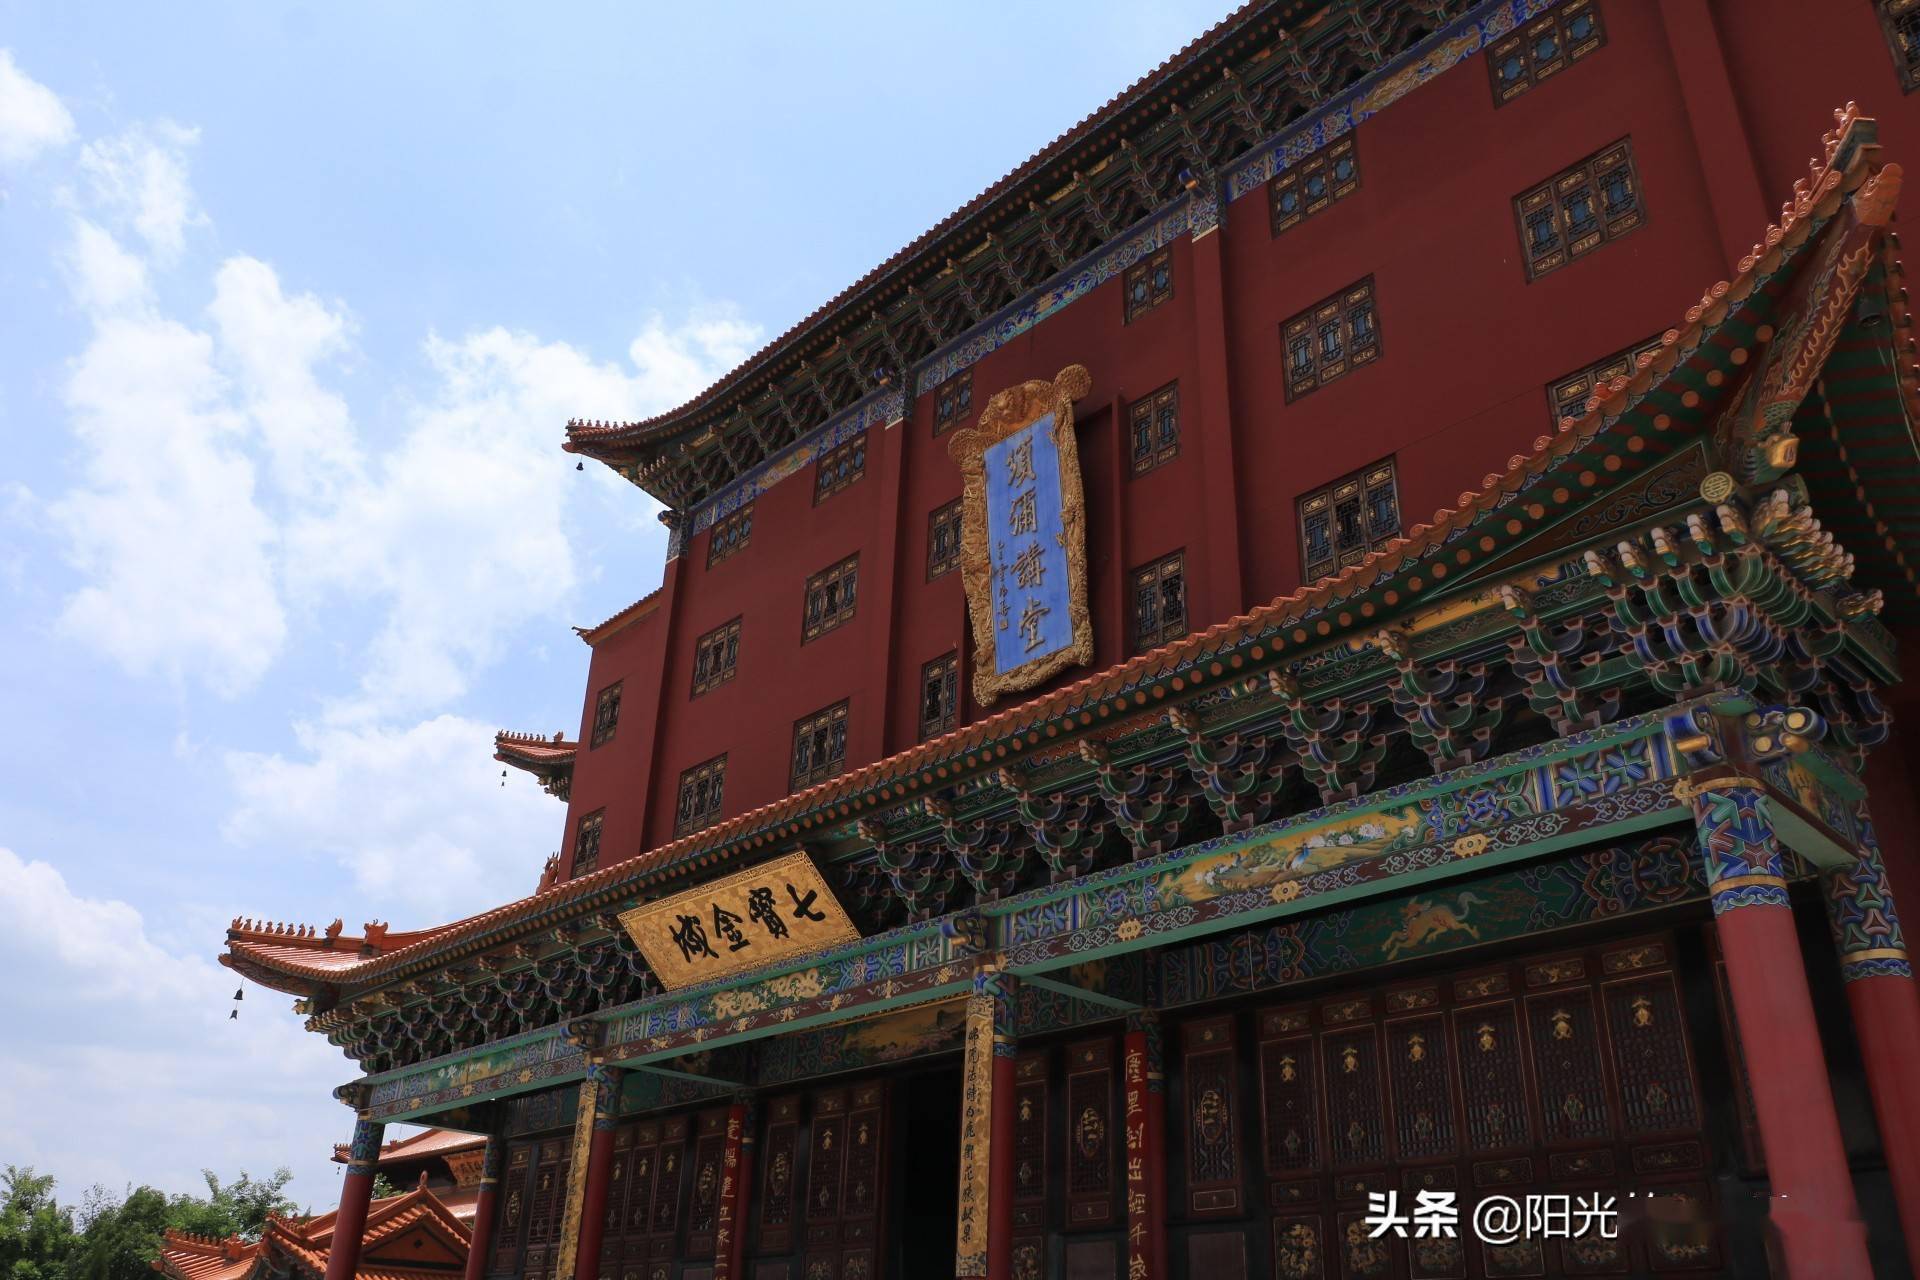 走进昆明宝华寺红墙黄瓦的建筑雄伟壮丽蔚为壮观